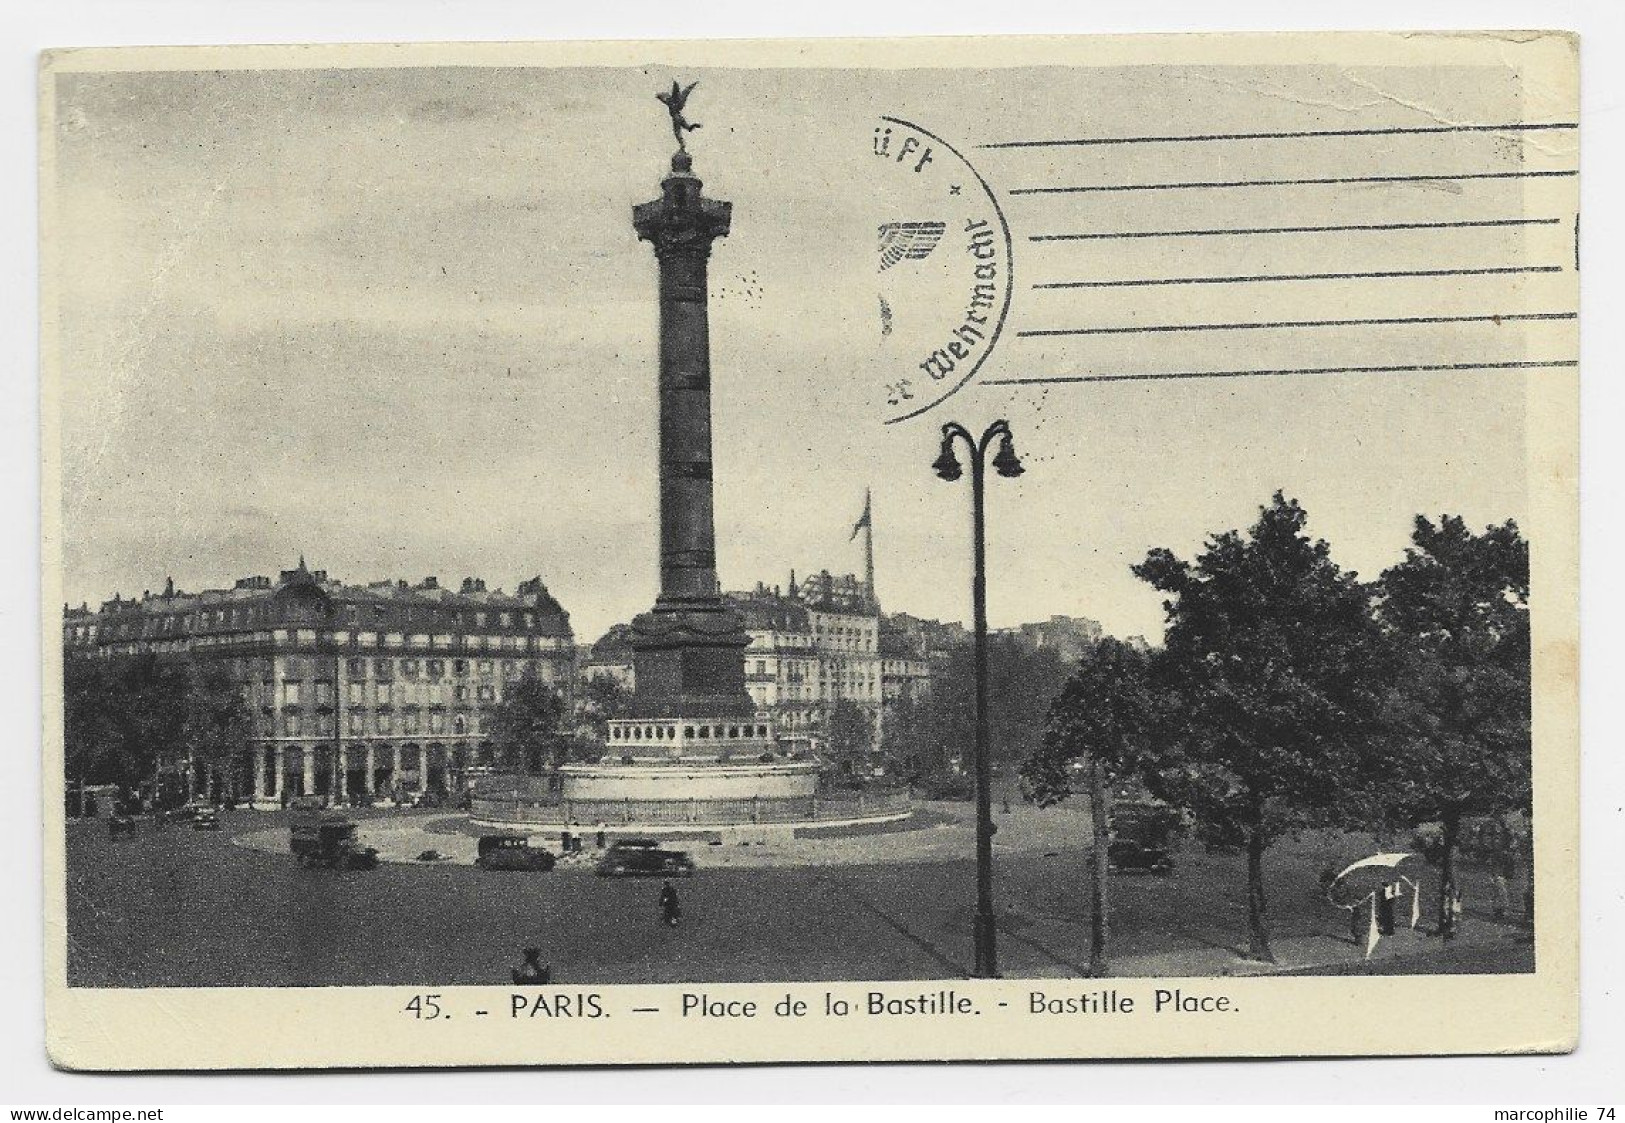 FRANCE CARTE EN FM DE PARIS 19.X.1940 ADRESSEE SUISSE CAMP MILITAIRE INTERNEMENT THORIGEN BERNE SUISSE + FELPOST CENSURE - Abstempelungen